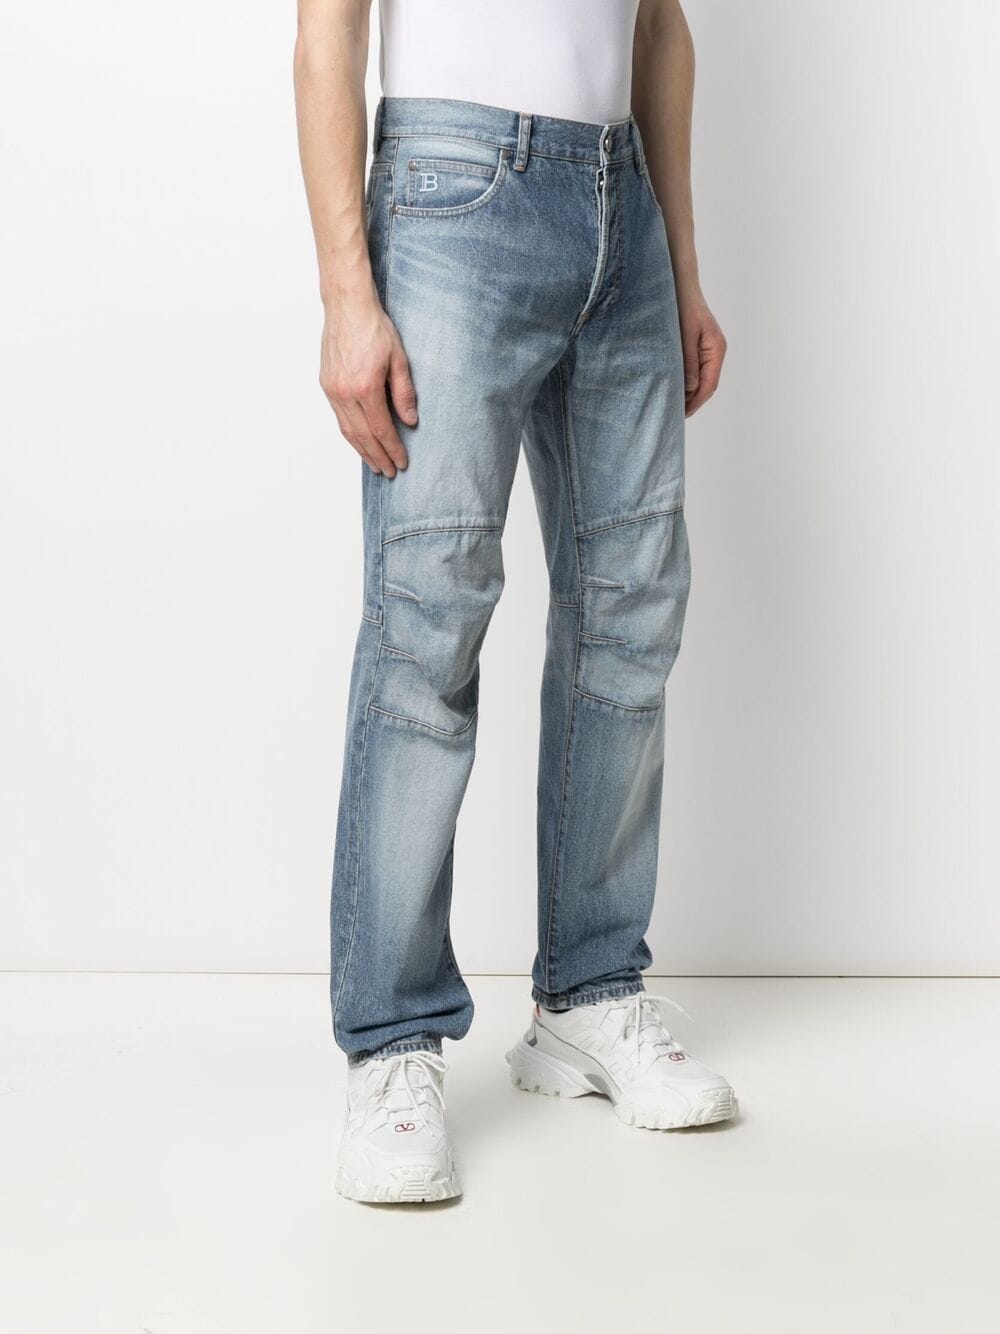 фото Balmain прямые джинсы с эффектом потертости